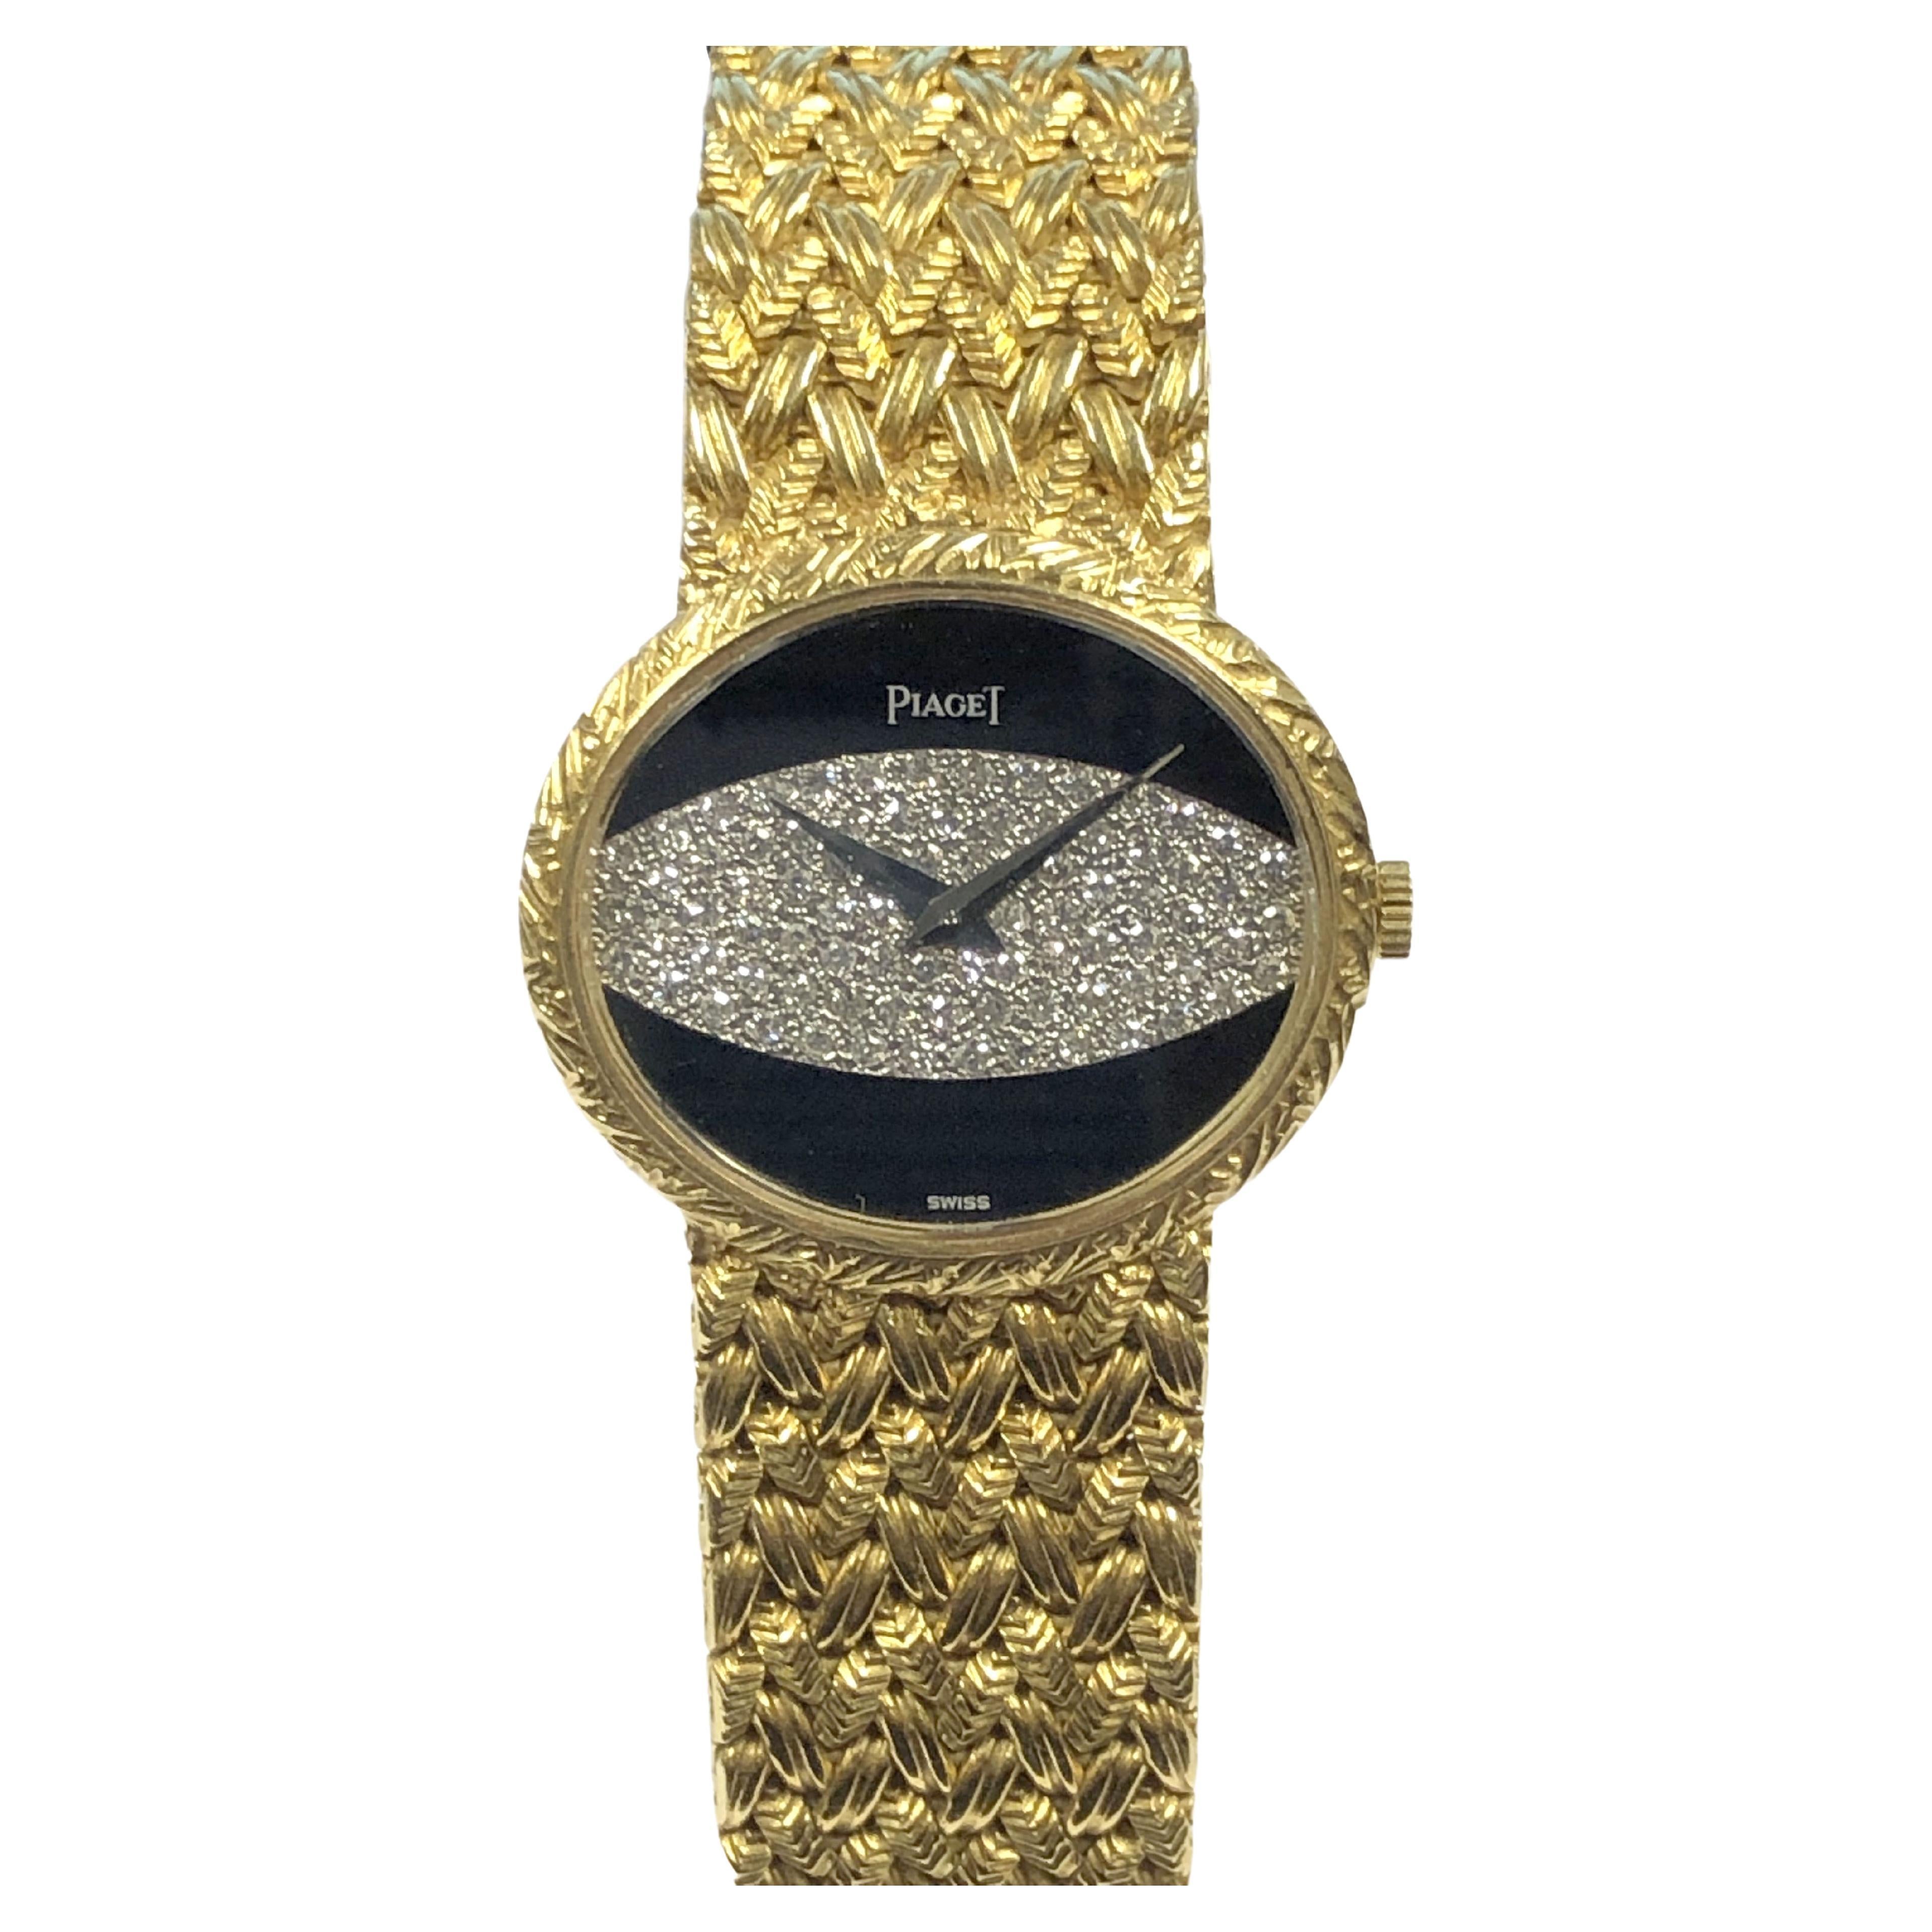 Piaget Montre-bracelet mécanique pour femmes avec cadran en or jaune, onyx et diamants